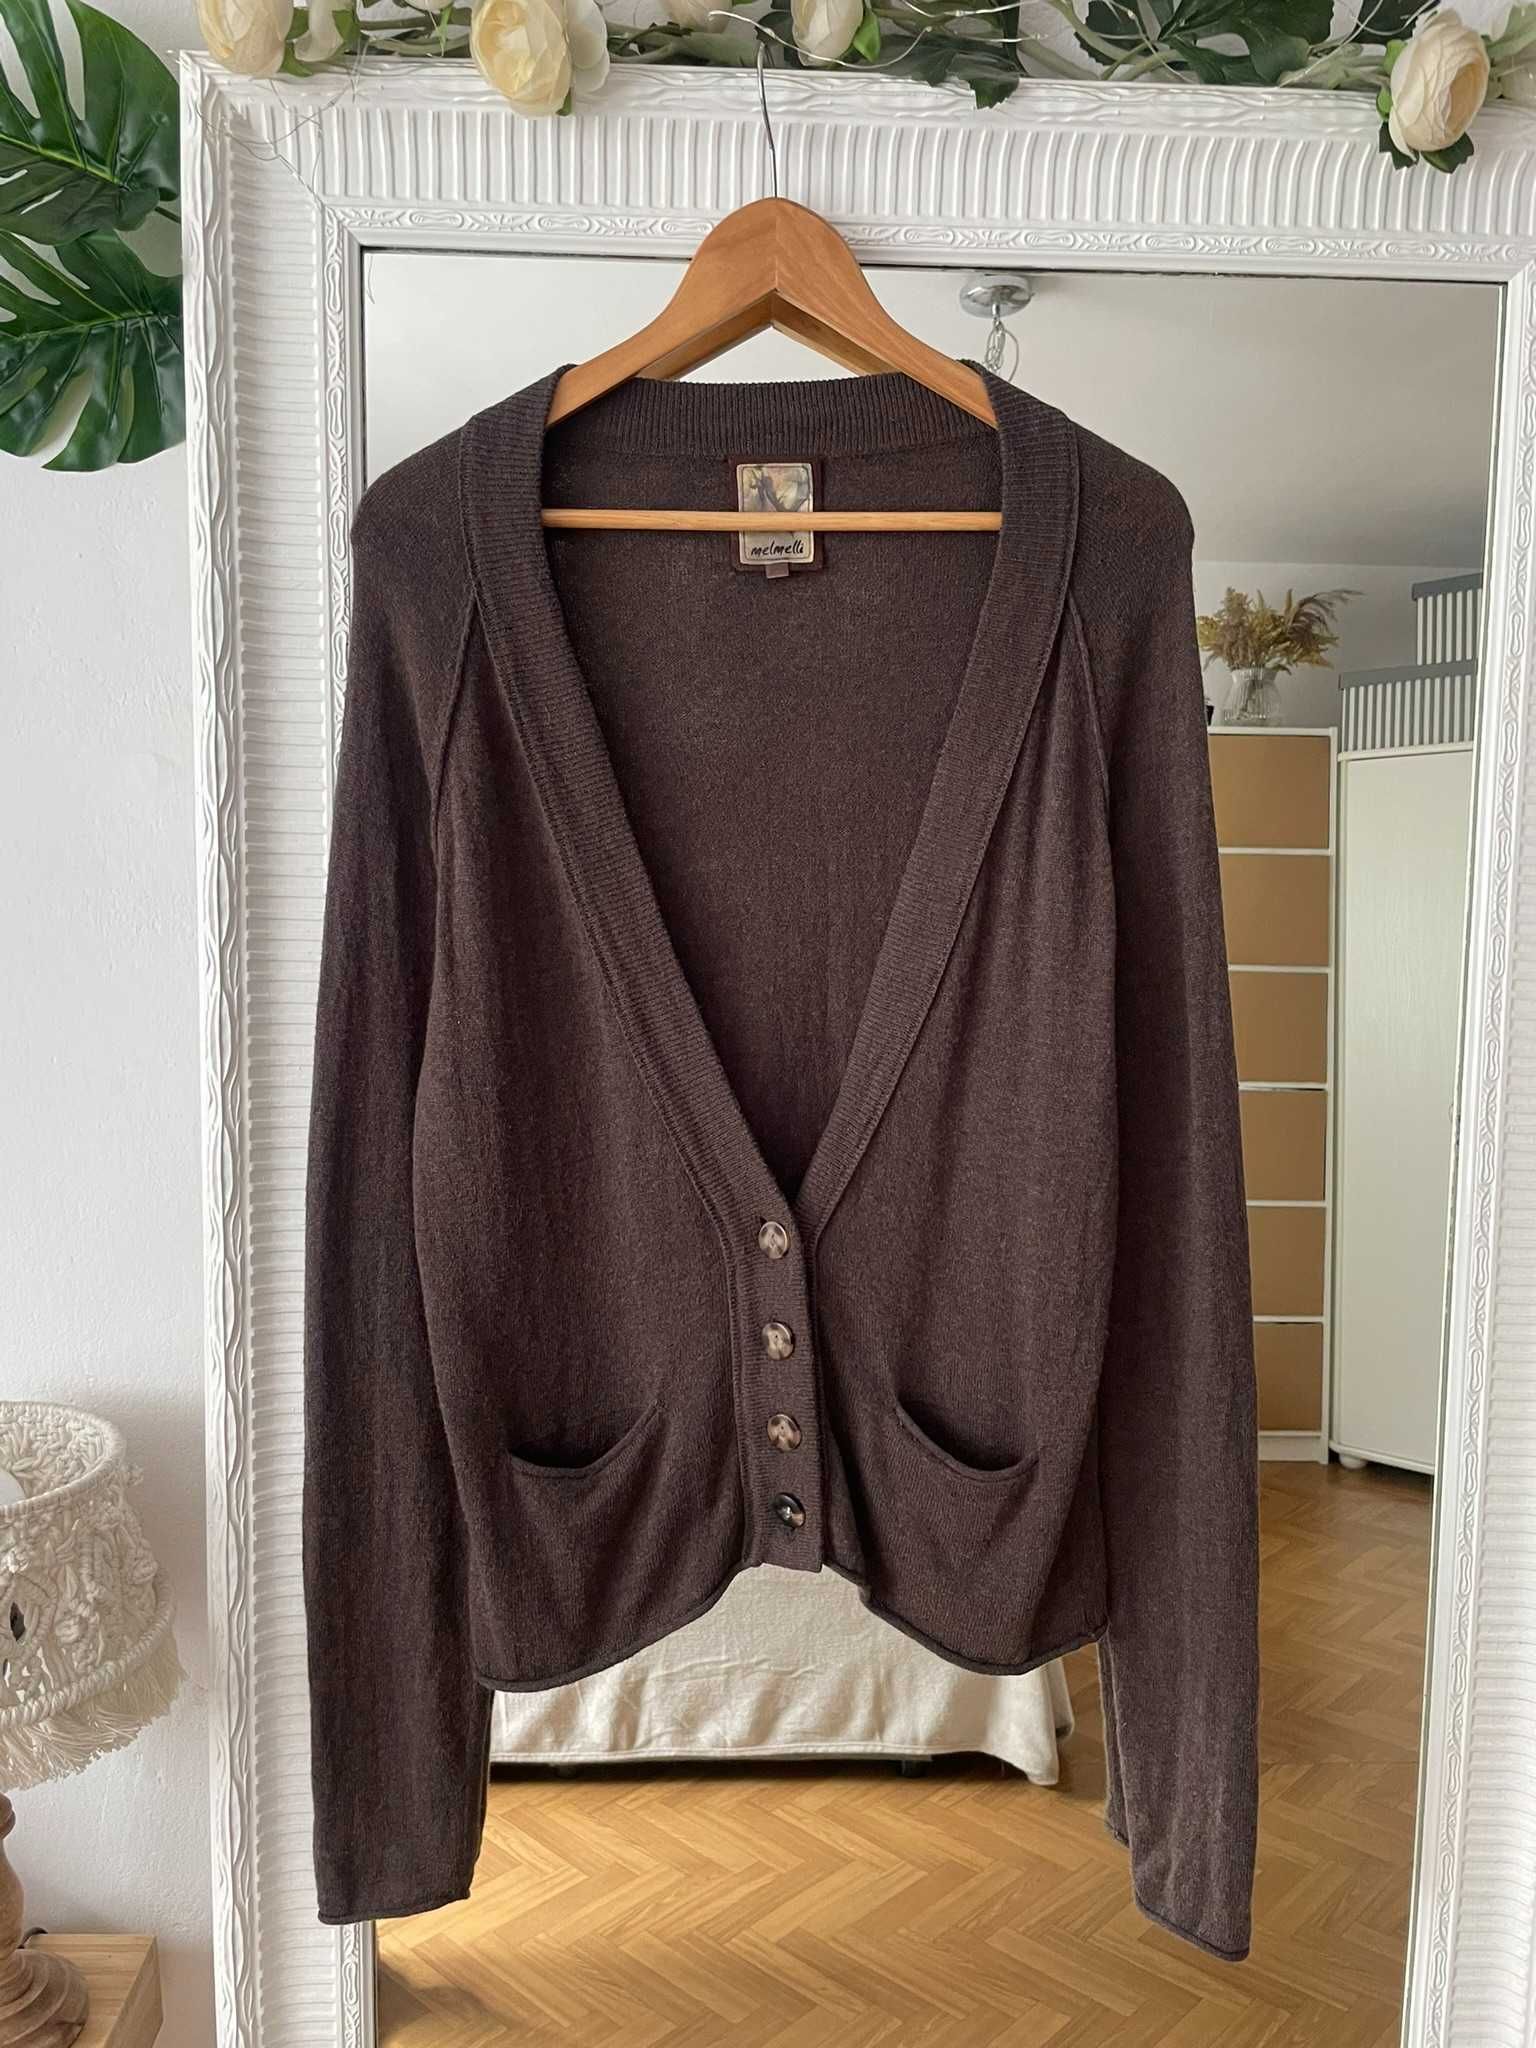 Sweter brązowy kardigan guziki kieszenie 30% wełna bawełna S 36 M 38